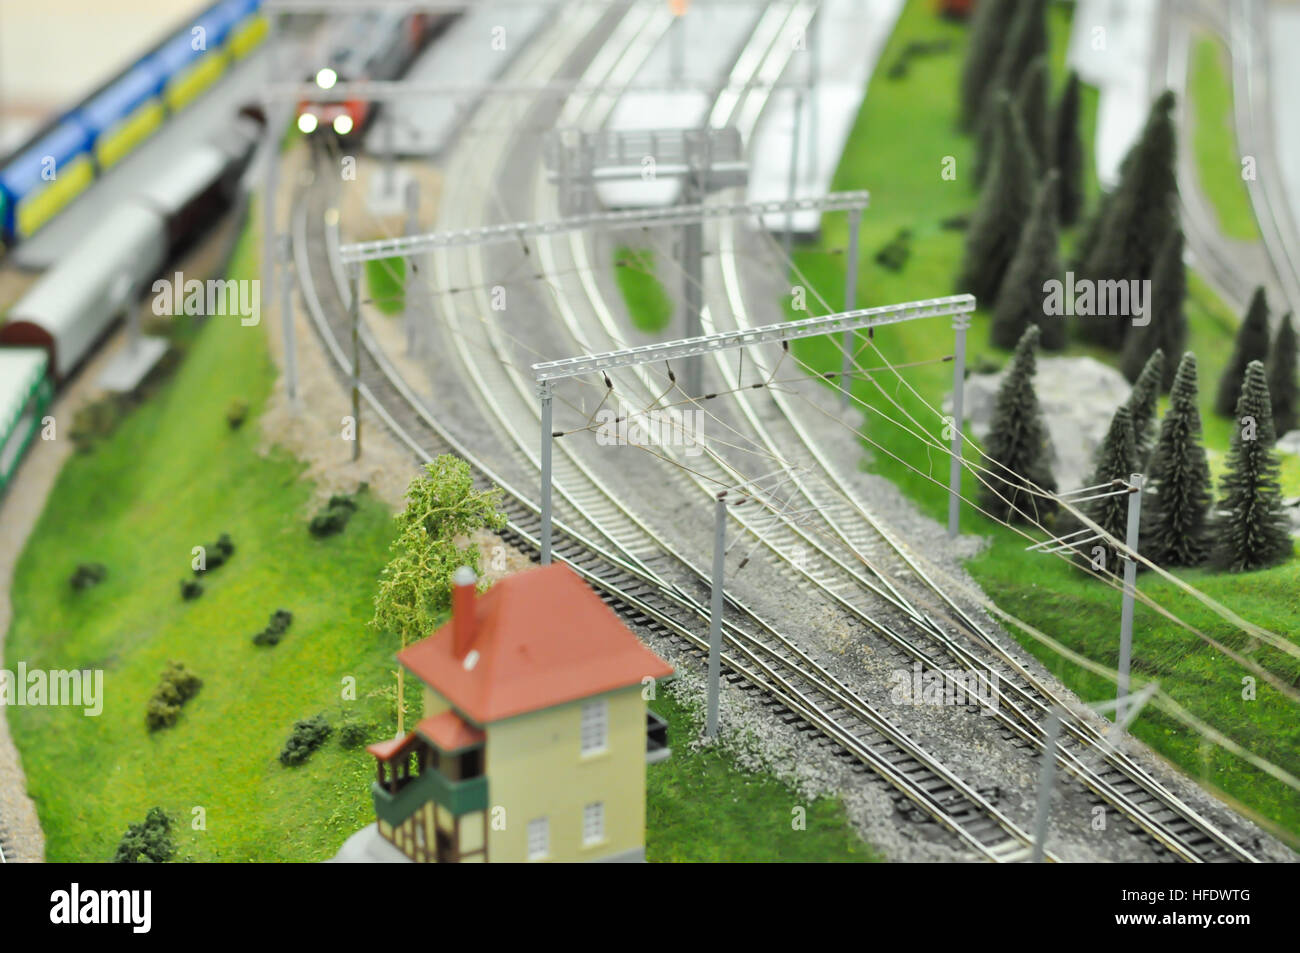 Maquette ferroviaire trains colorés Banque D'Images